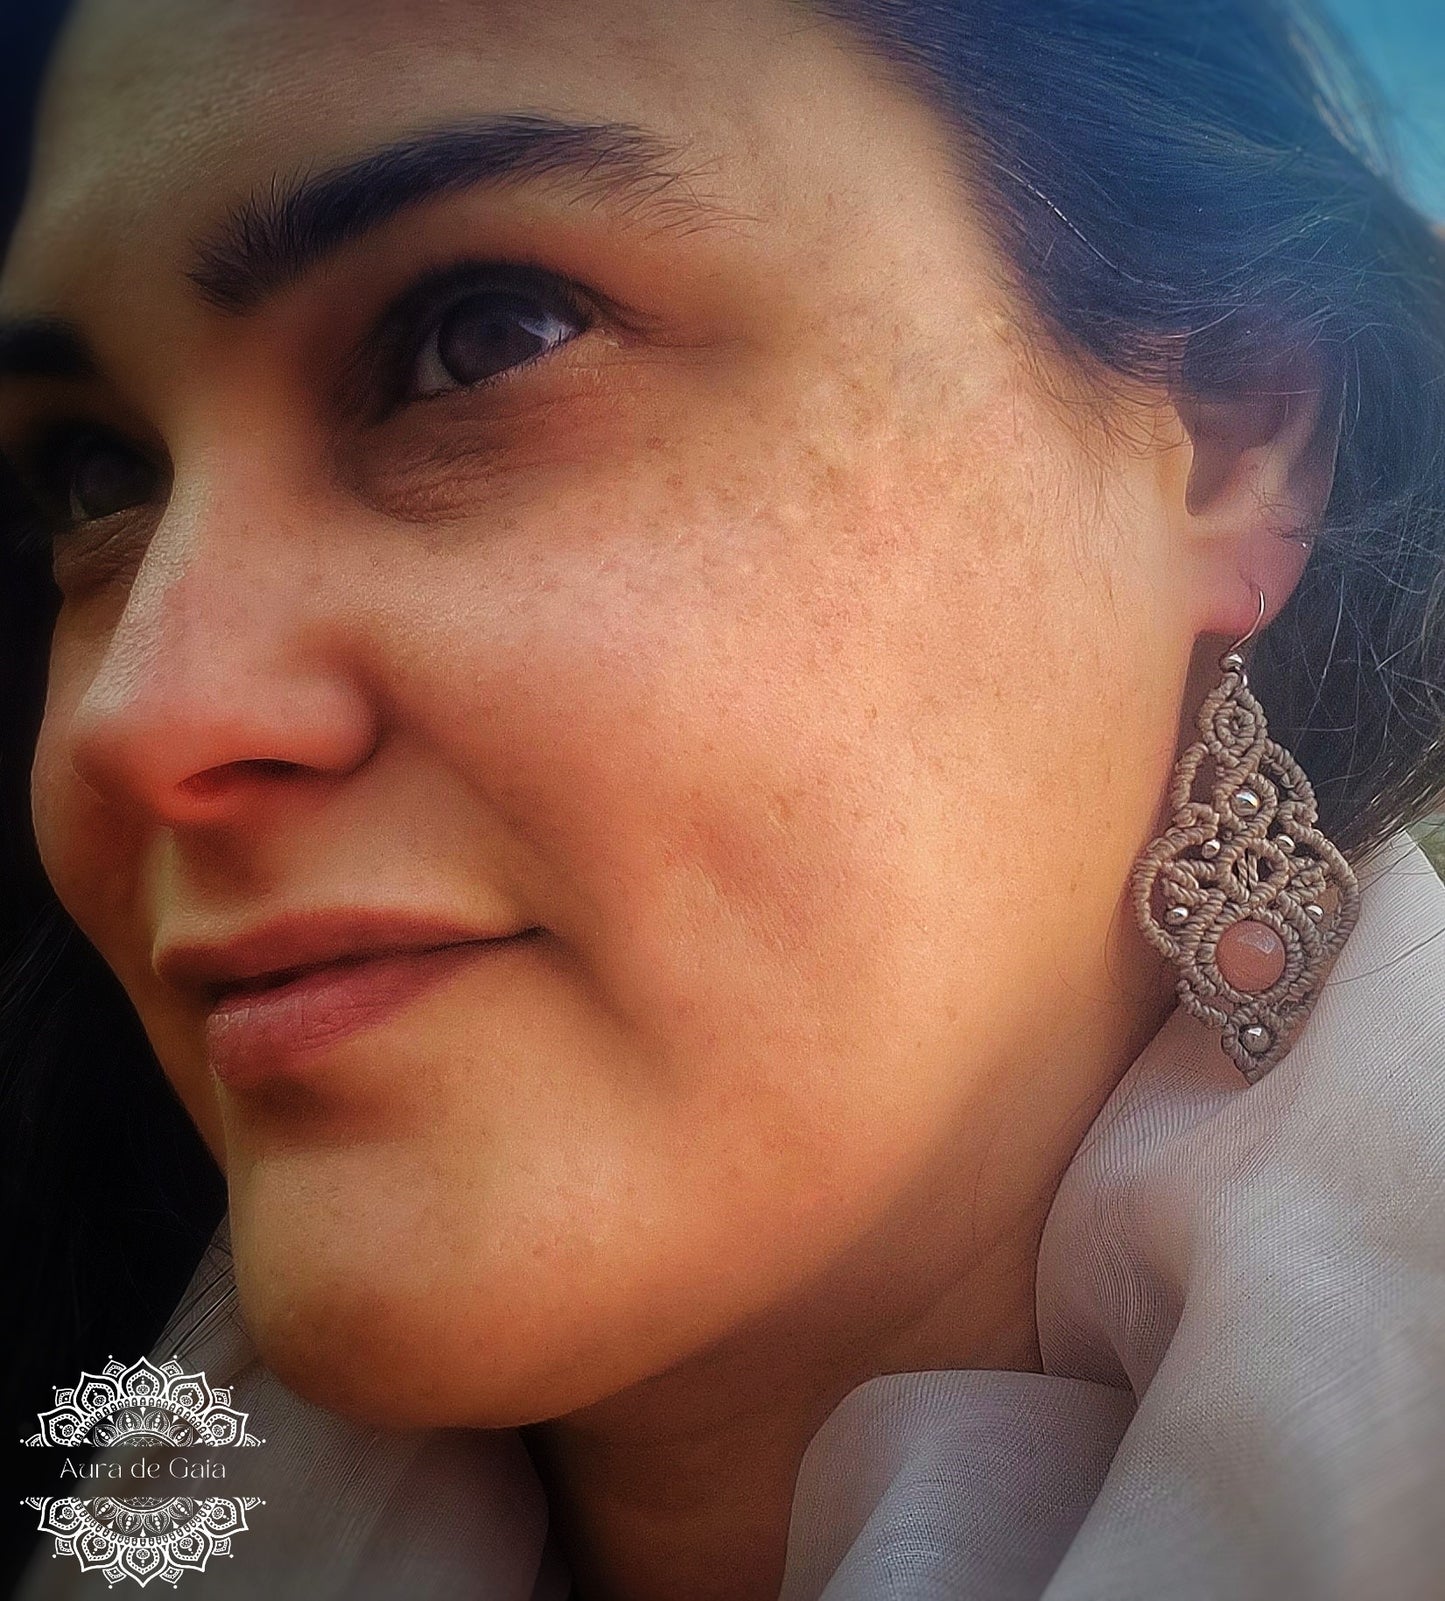 Delicados Pendientes Bohemios con Piedra del Sol en Macramé/ Handcrafted Boho Hippie Natural Stone Earrings